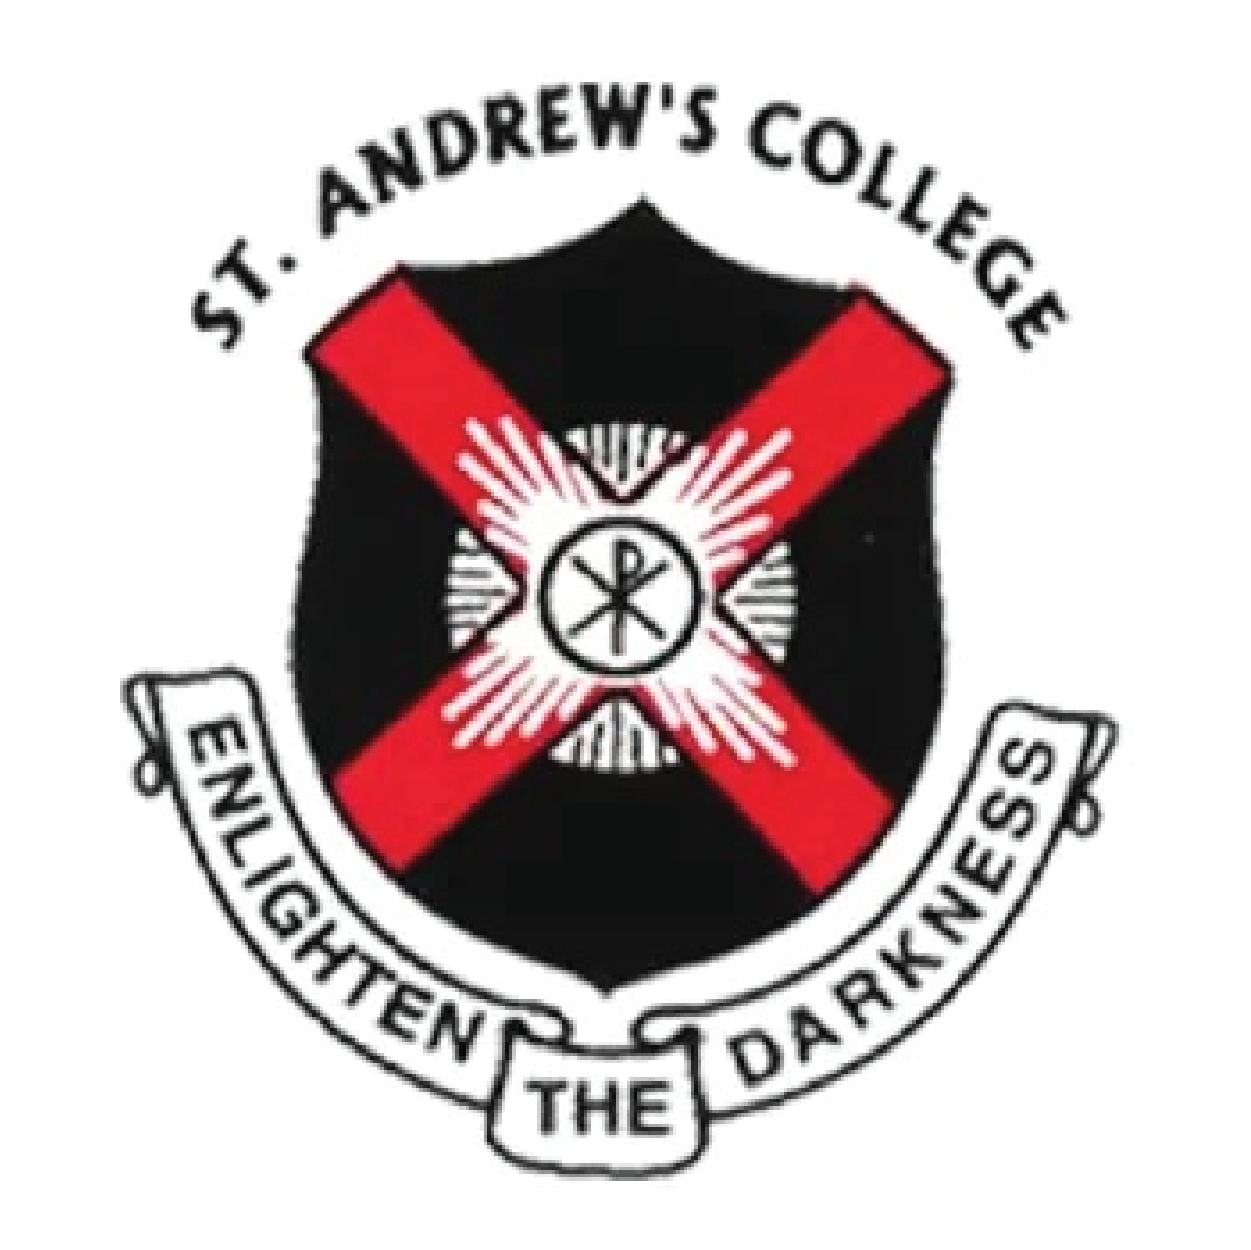 St Andrew's College